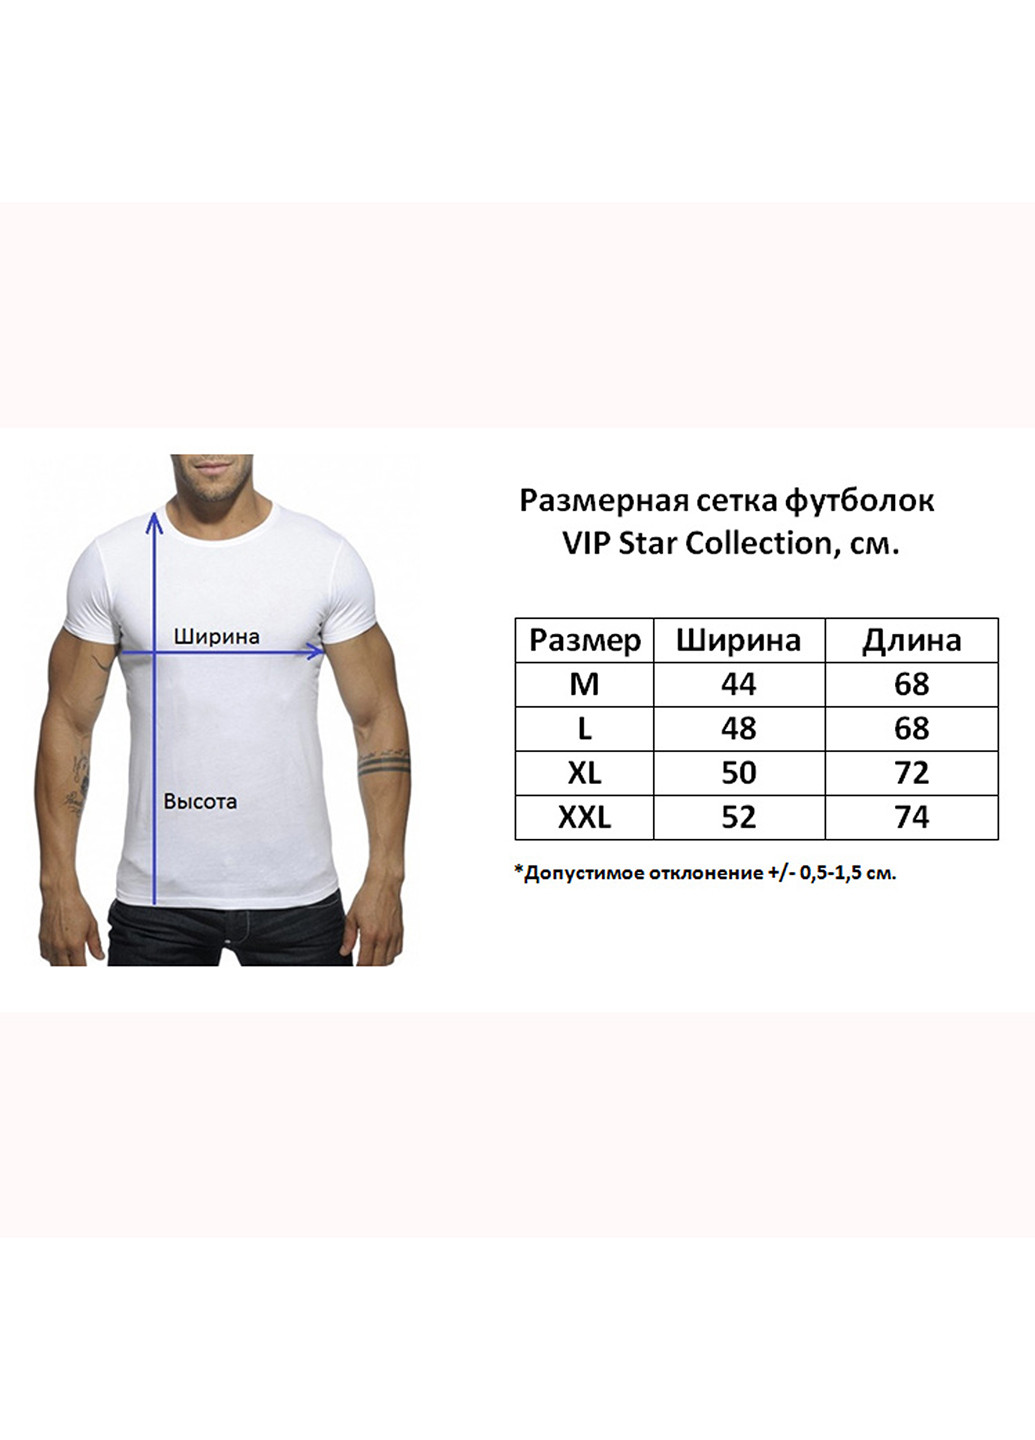 Хаки (оливковая) длинная футболка с разрезами с коротким рукавом Vip Star Collection